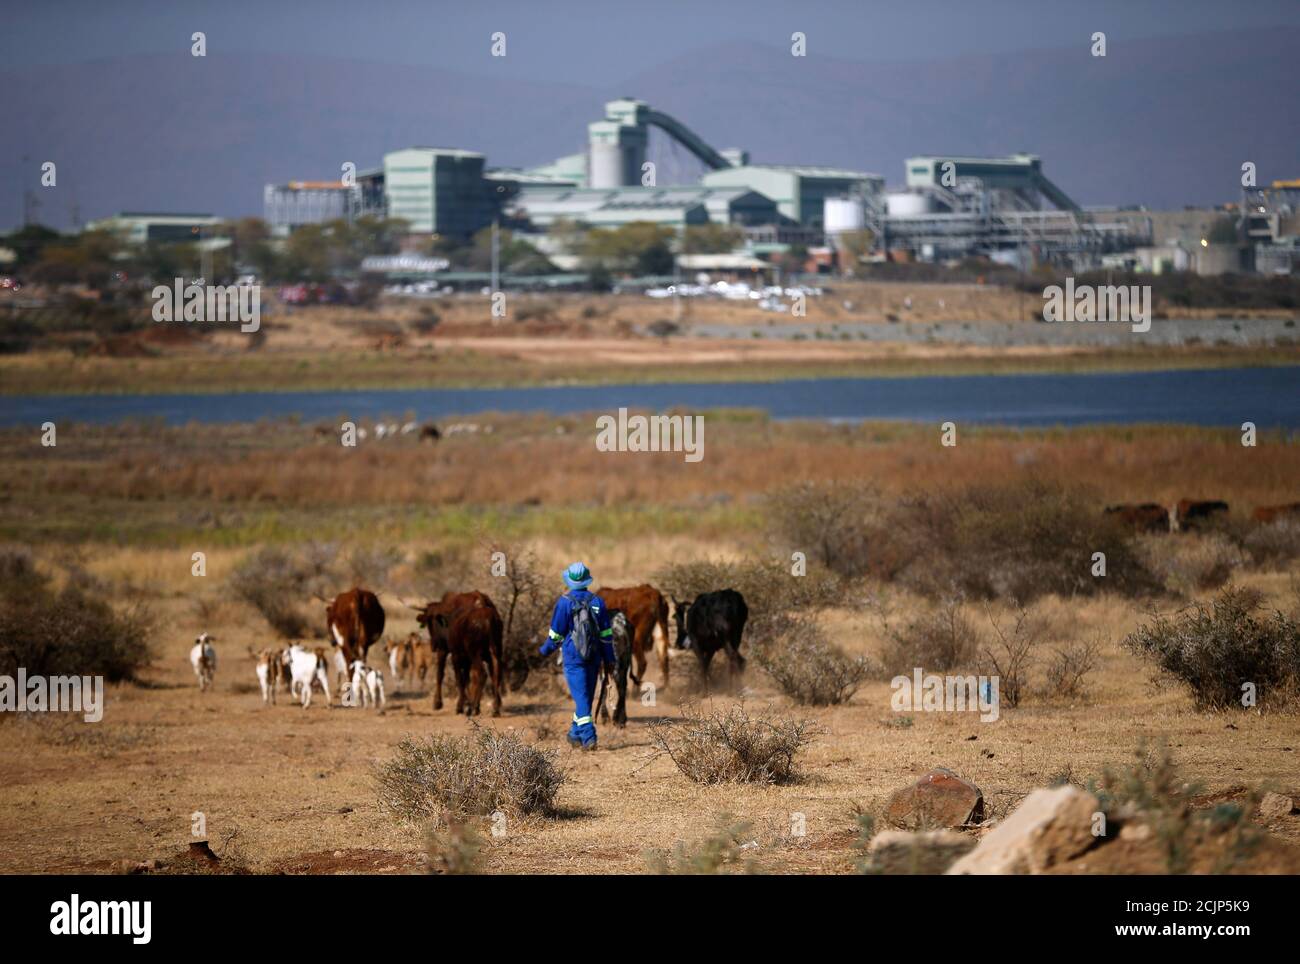 Un pastor conduce a una manada de ganado hacia la mina de platino Mogalakwena en Mokopane, provincia de Limpopo, Sudáfrica, 20 de septiembre de 2017. Foto tomada el 20 de septiembre de 2017. Para igualar Insight ÁFRICA-PLATINUM/. REUTERS/Siphiwe Sibeko Foto de stock